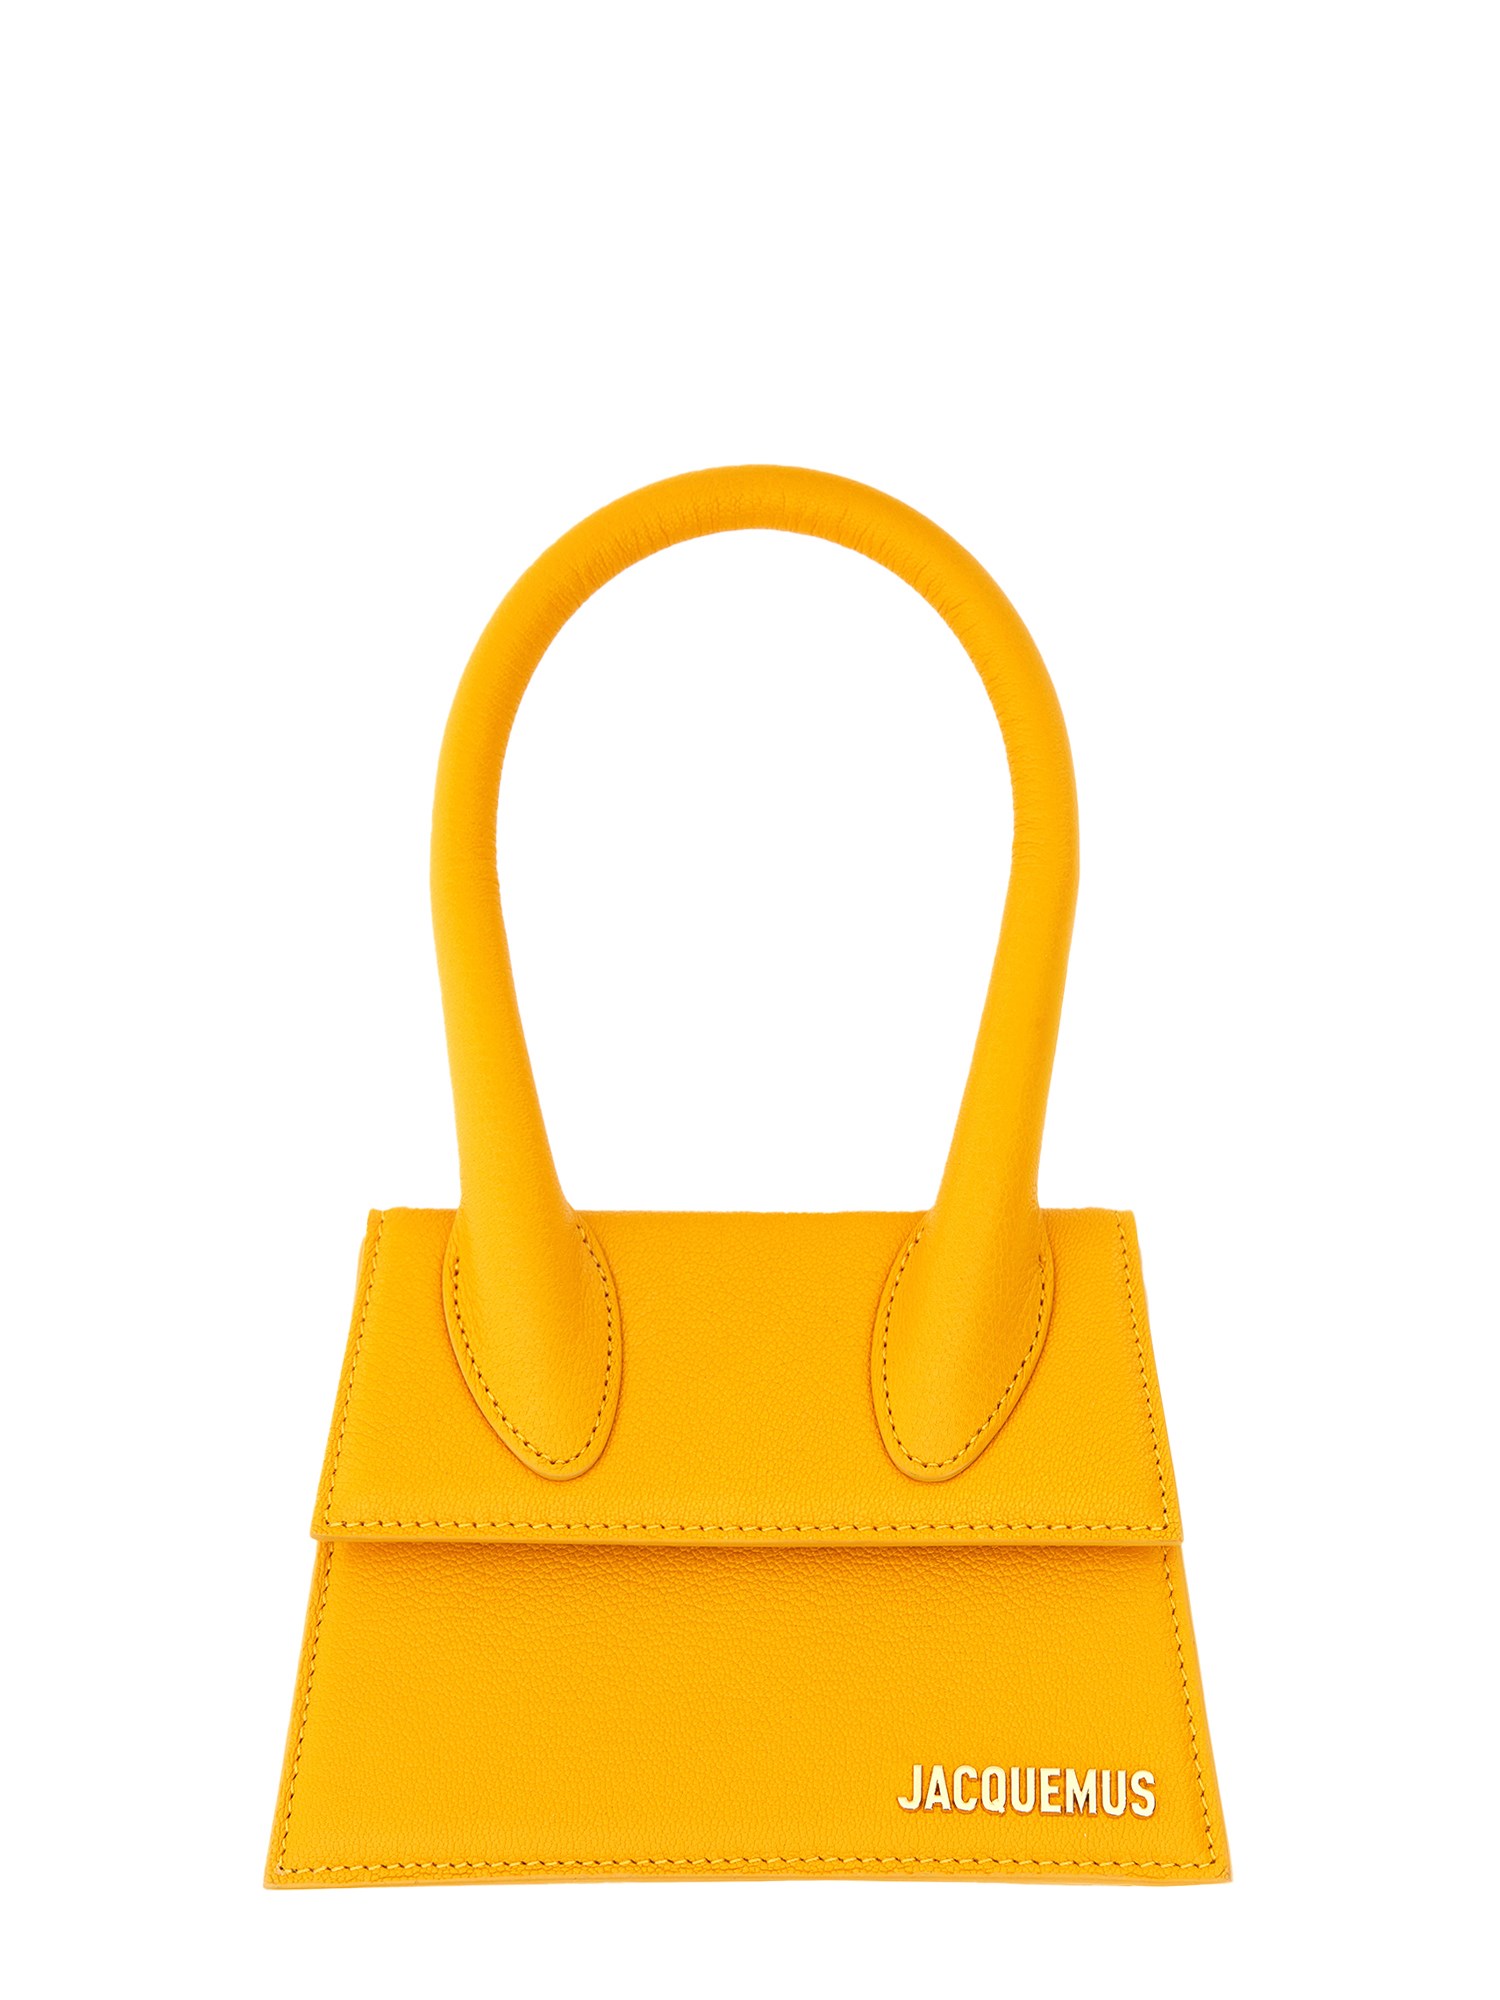 Jacquemus "la Chiquito Moyen" Bag In Orange